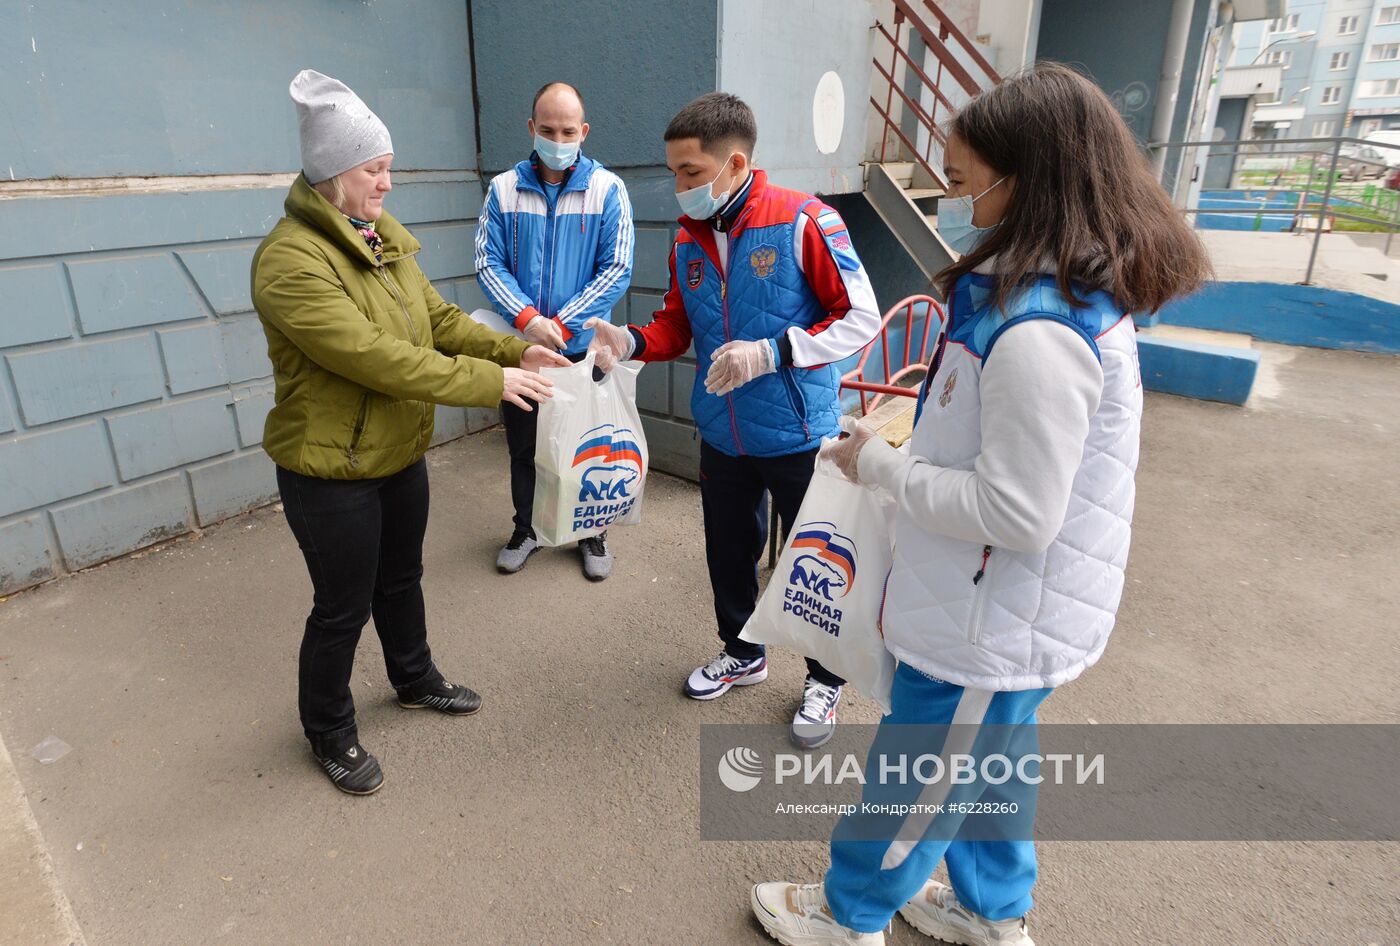 Работа волонтеров в Челябинской области